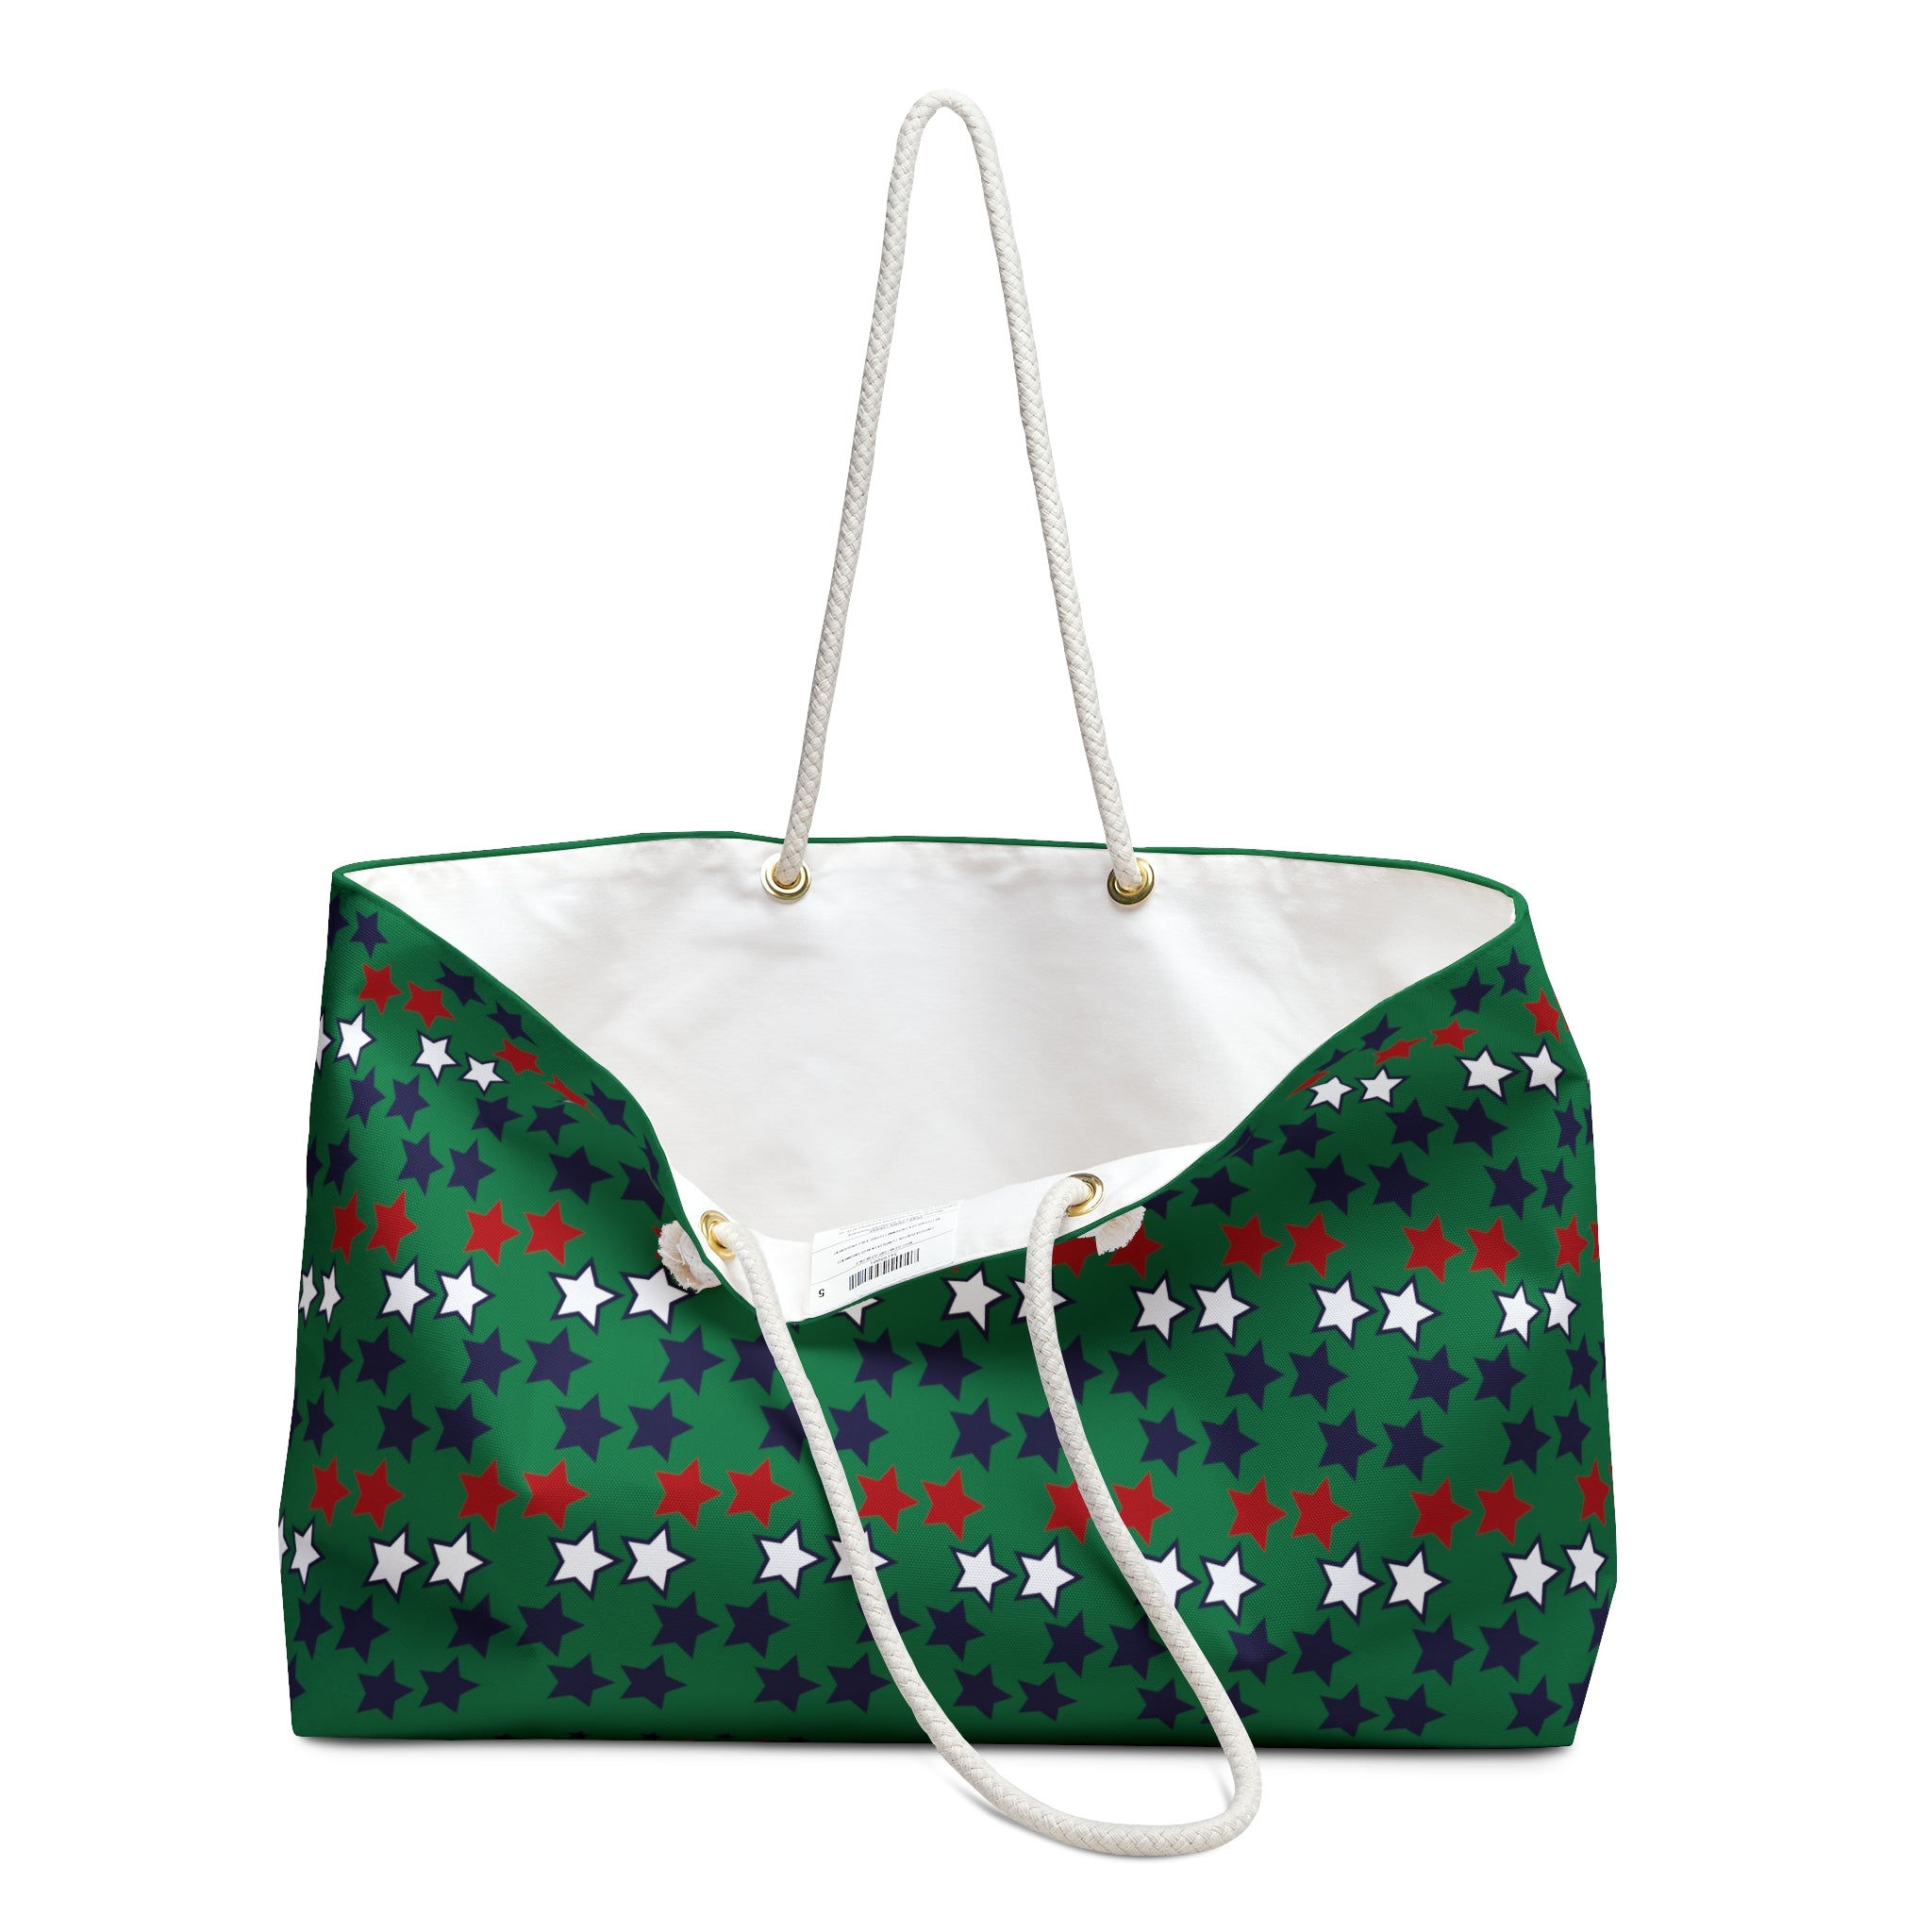 Emerald Starry Weekender Tote Bag